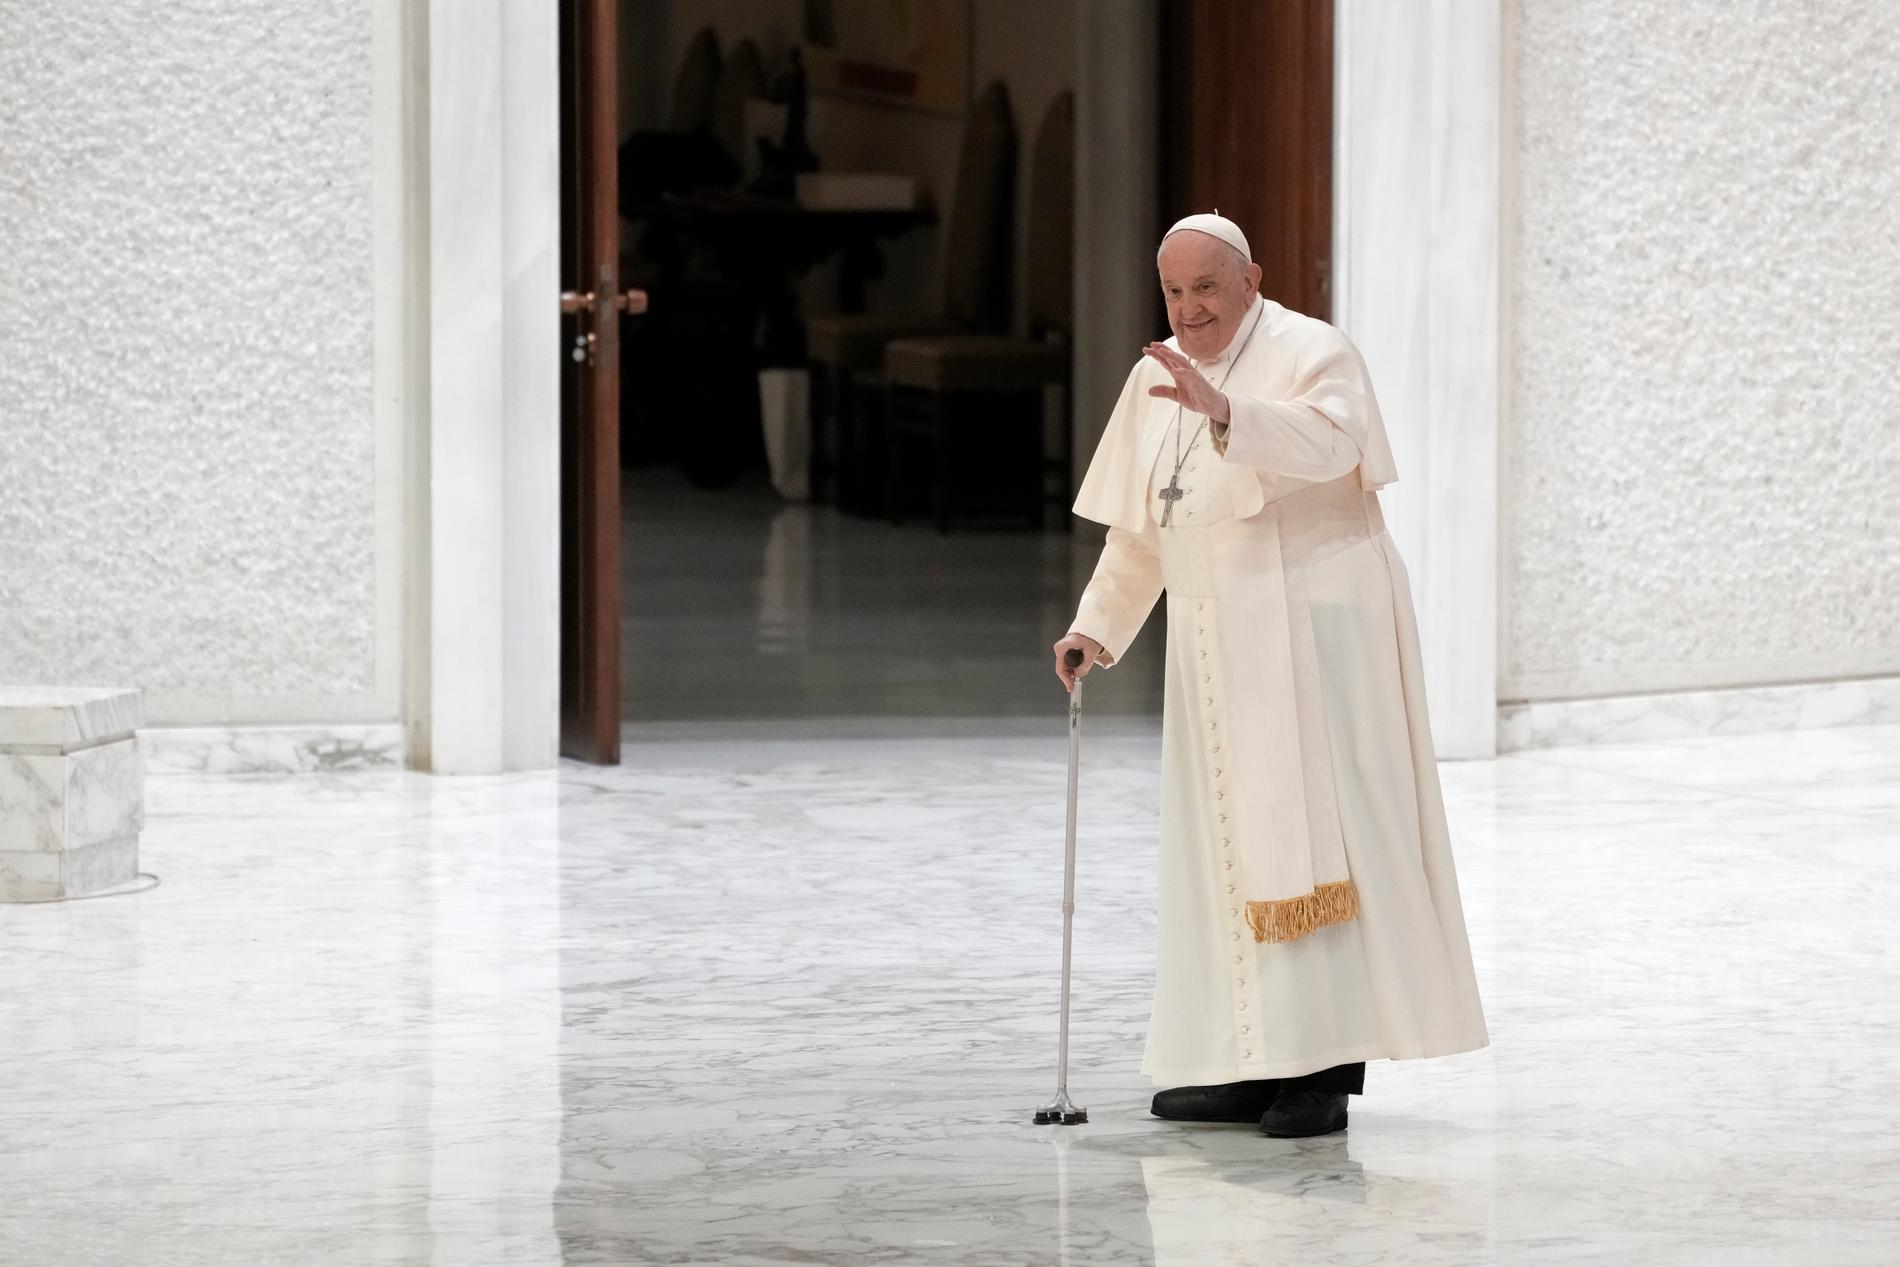 Pave Frans har godkjent dokumentet som ble utstedt av Vatikanet i desember. 